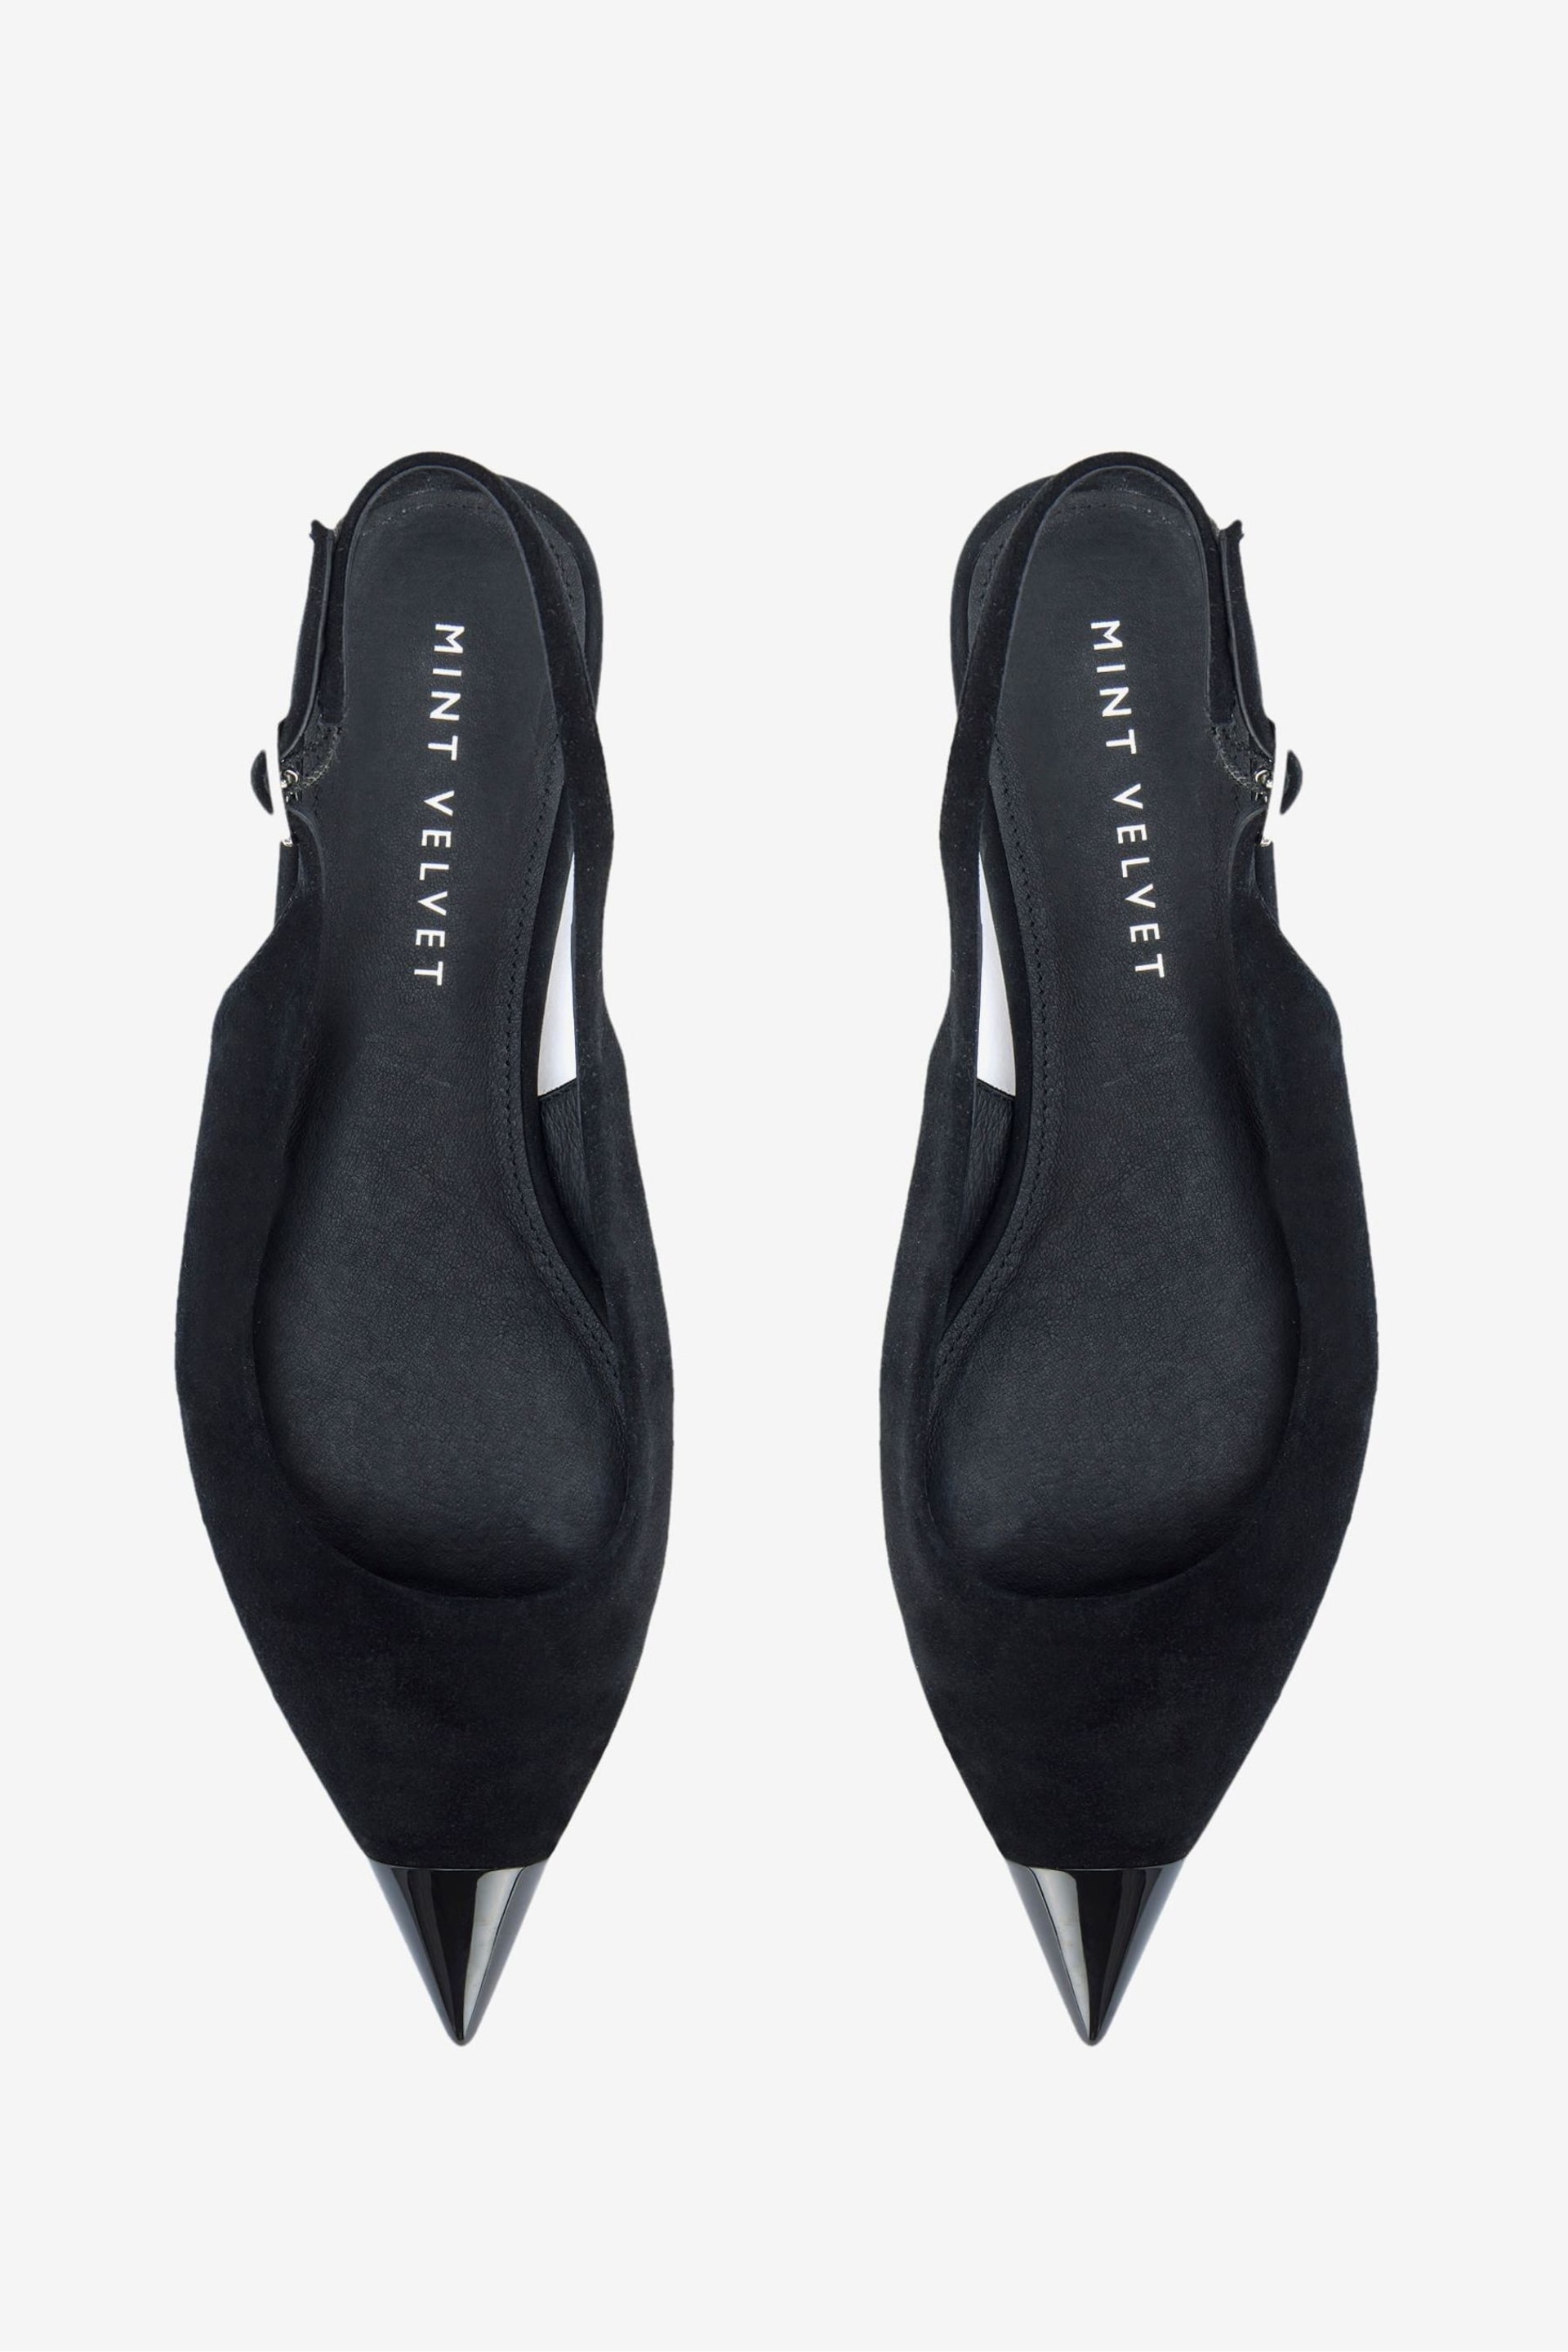 Mint Velvet Black Suede Toe Cap Flats Shoes - Image 3 of 4